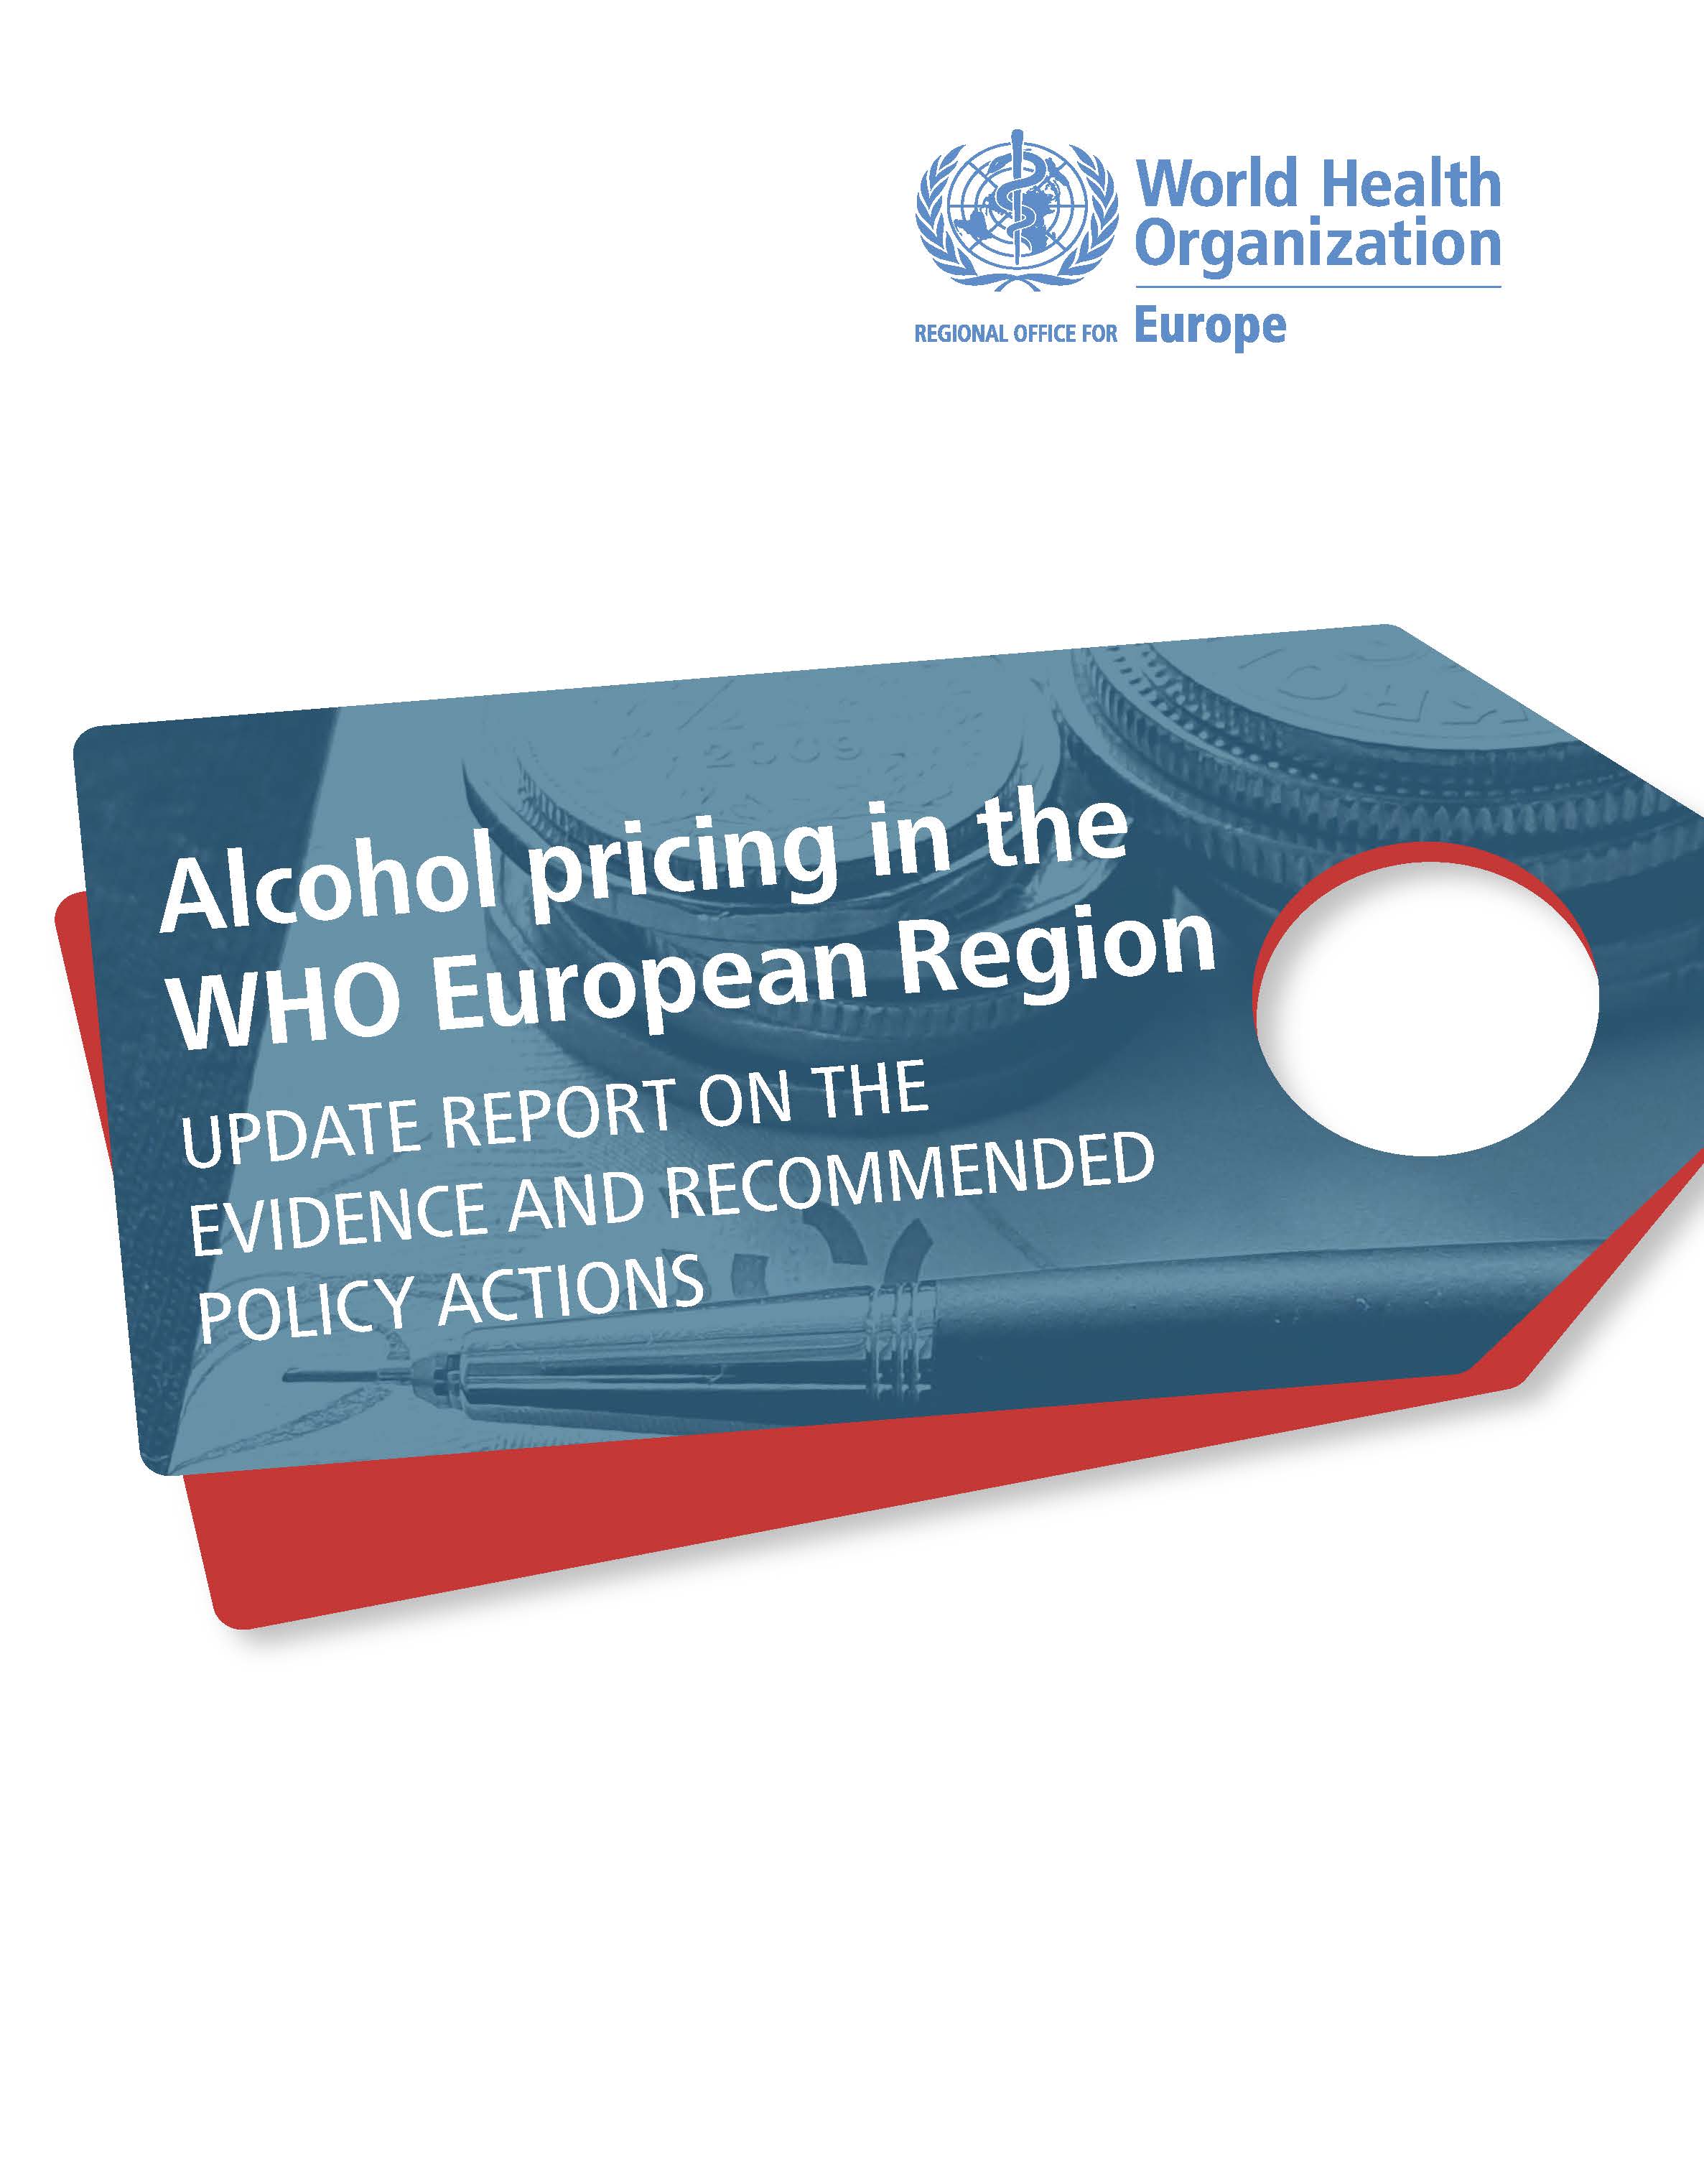 imagem da publicação da OMS sobre os preços do álcool